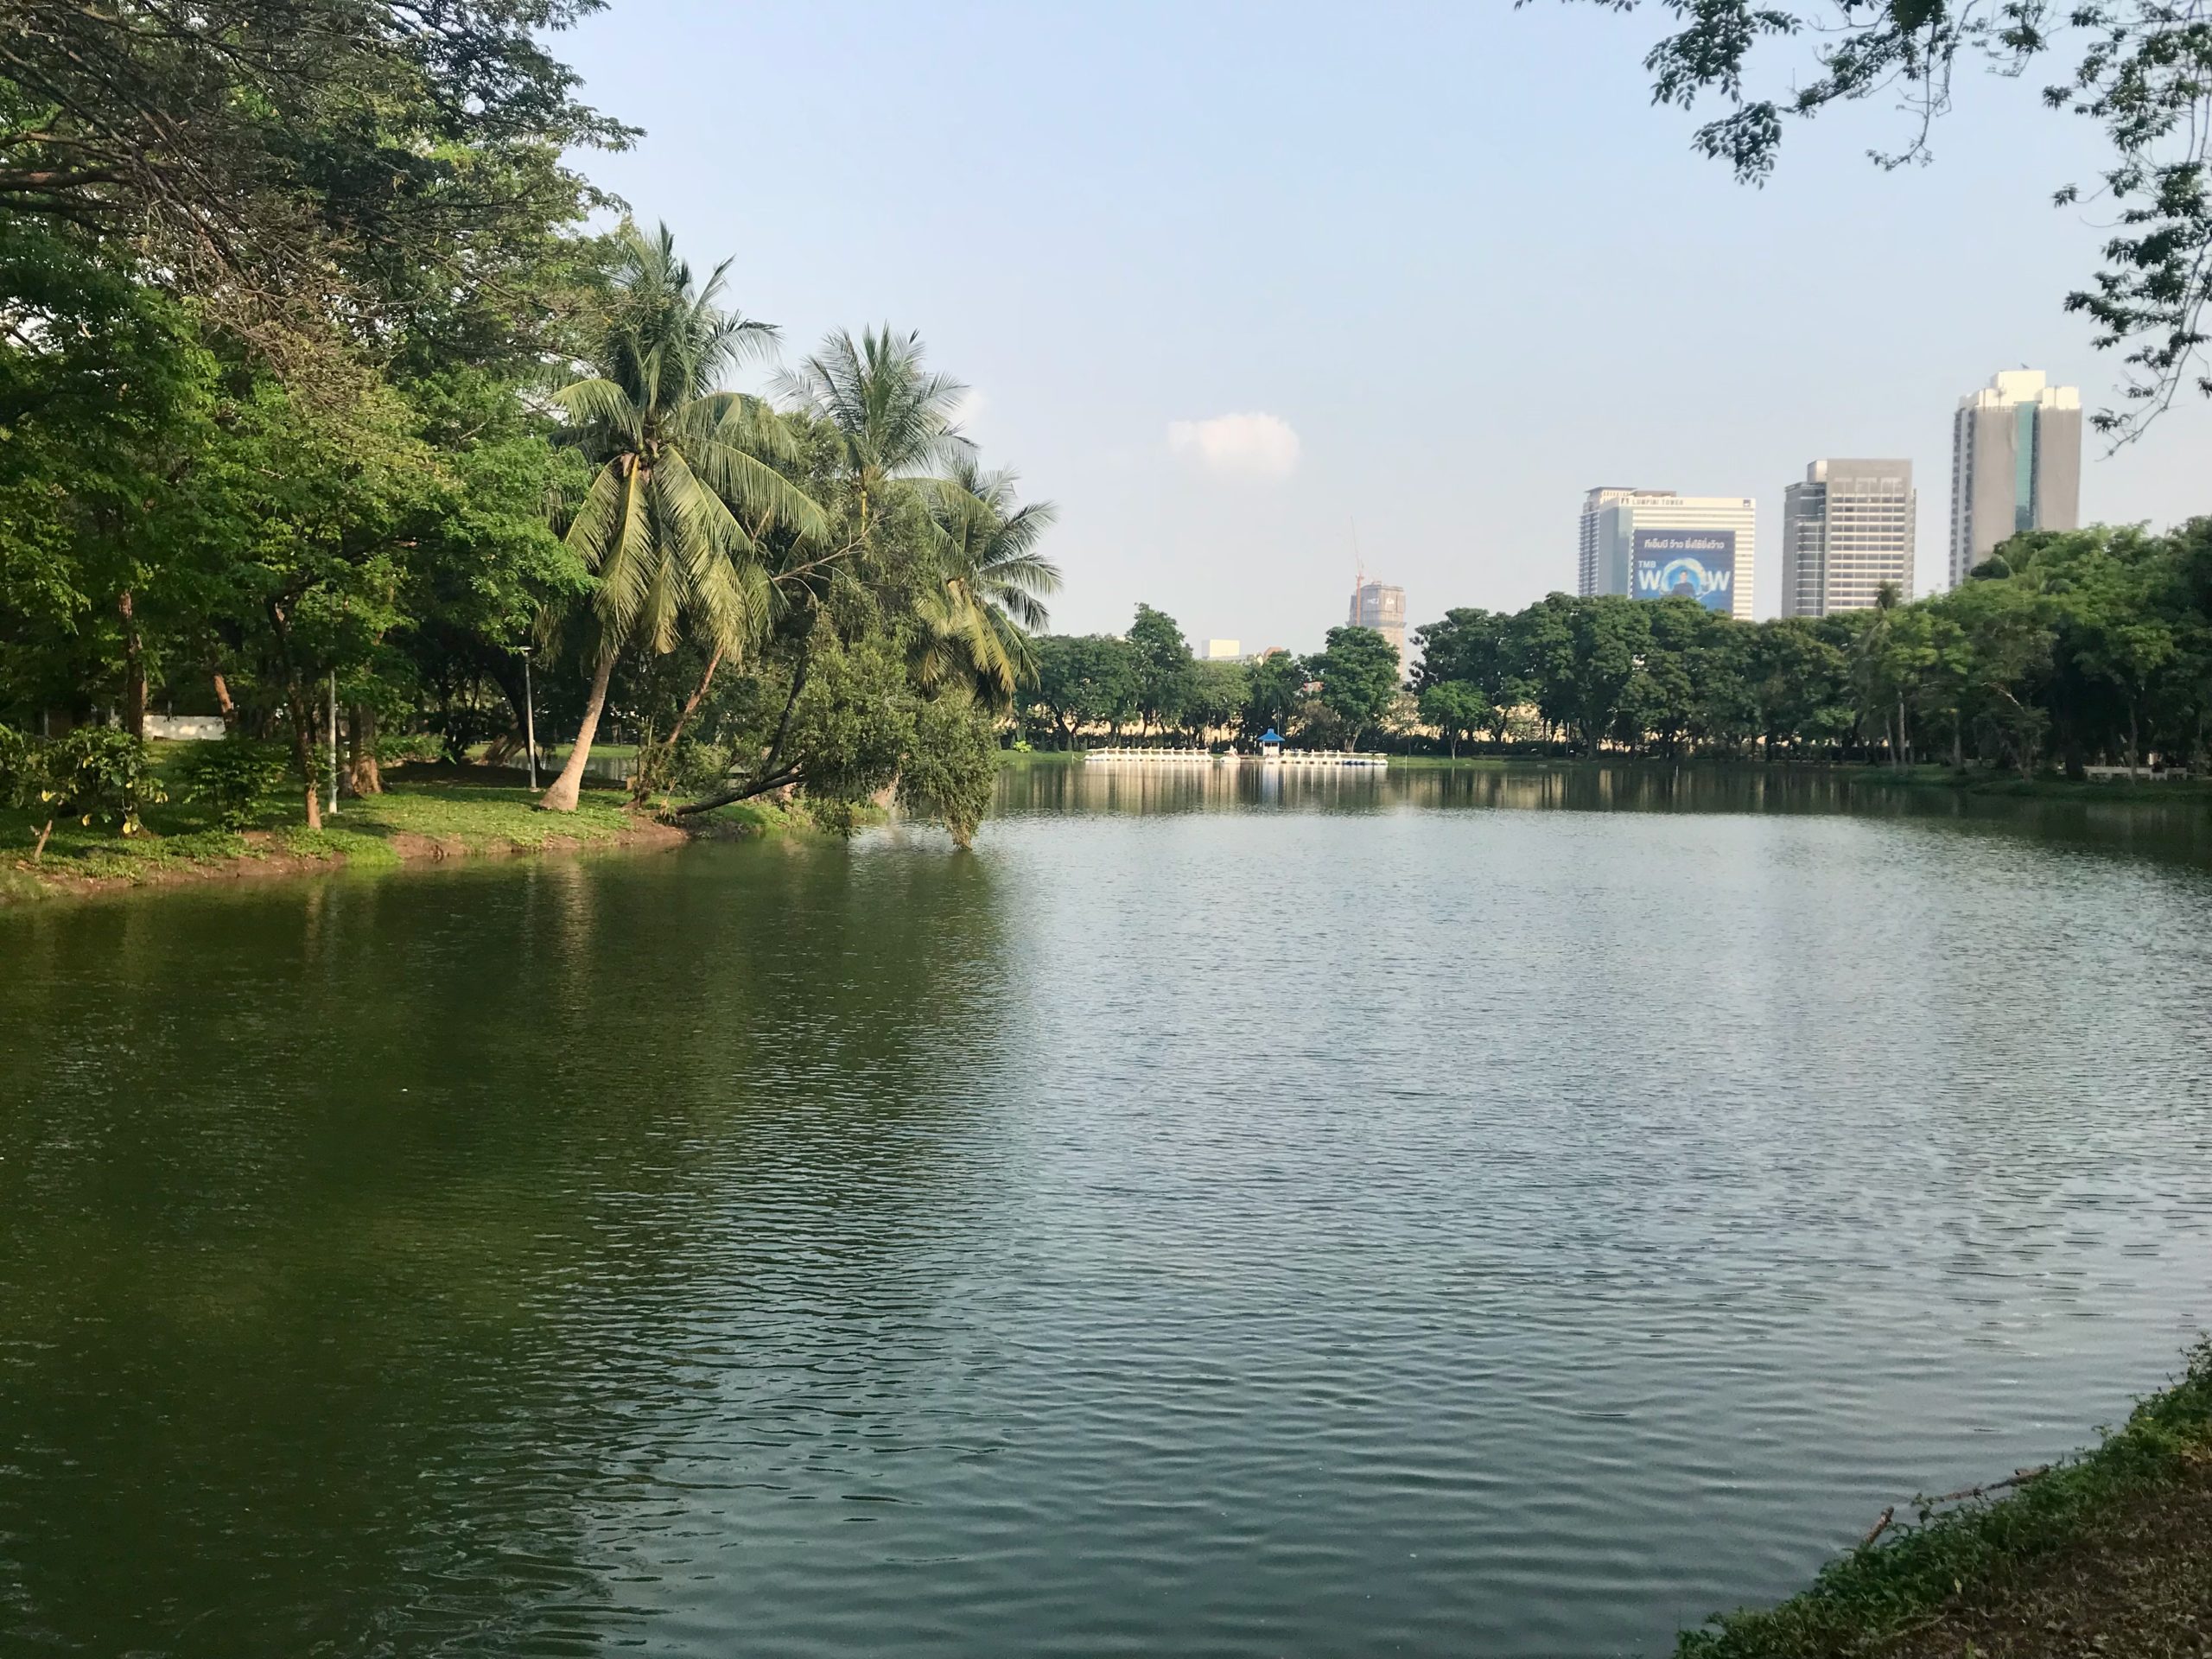 Vue paisible sur le lac du parc Lumpini de Bangkok, encadré par des palmiers et l'horizon urbain.